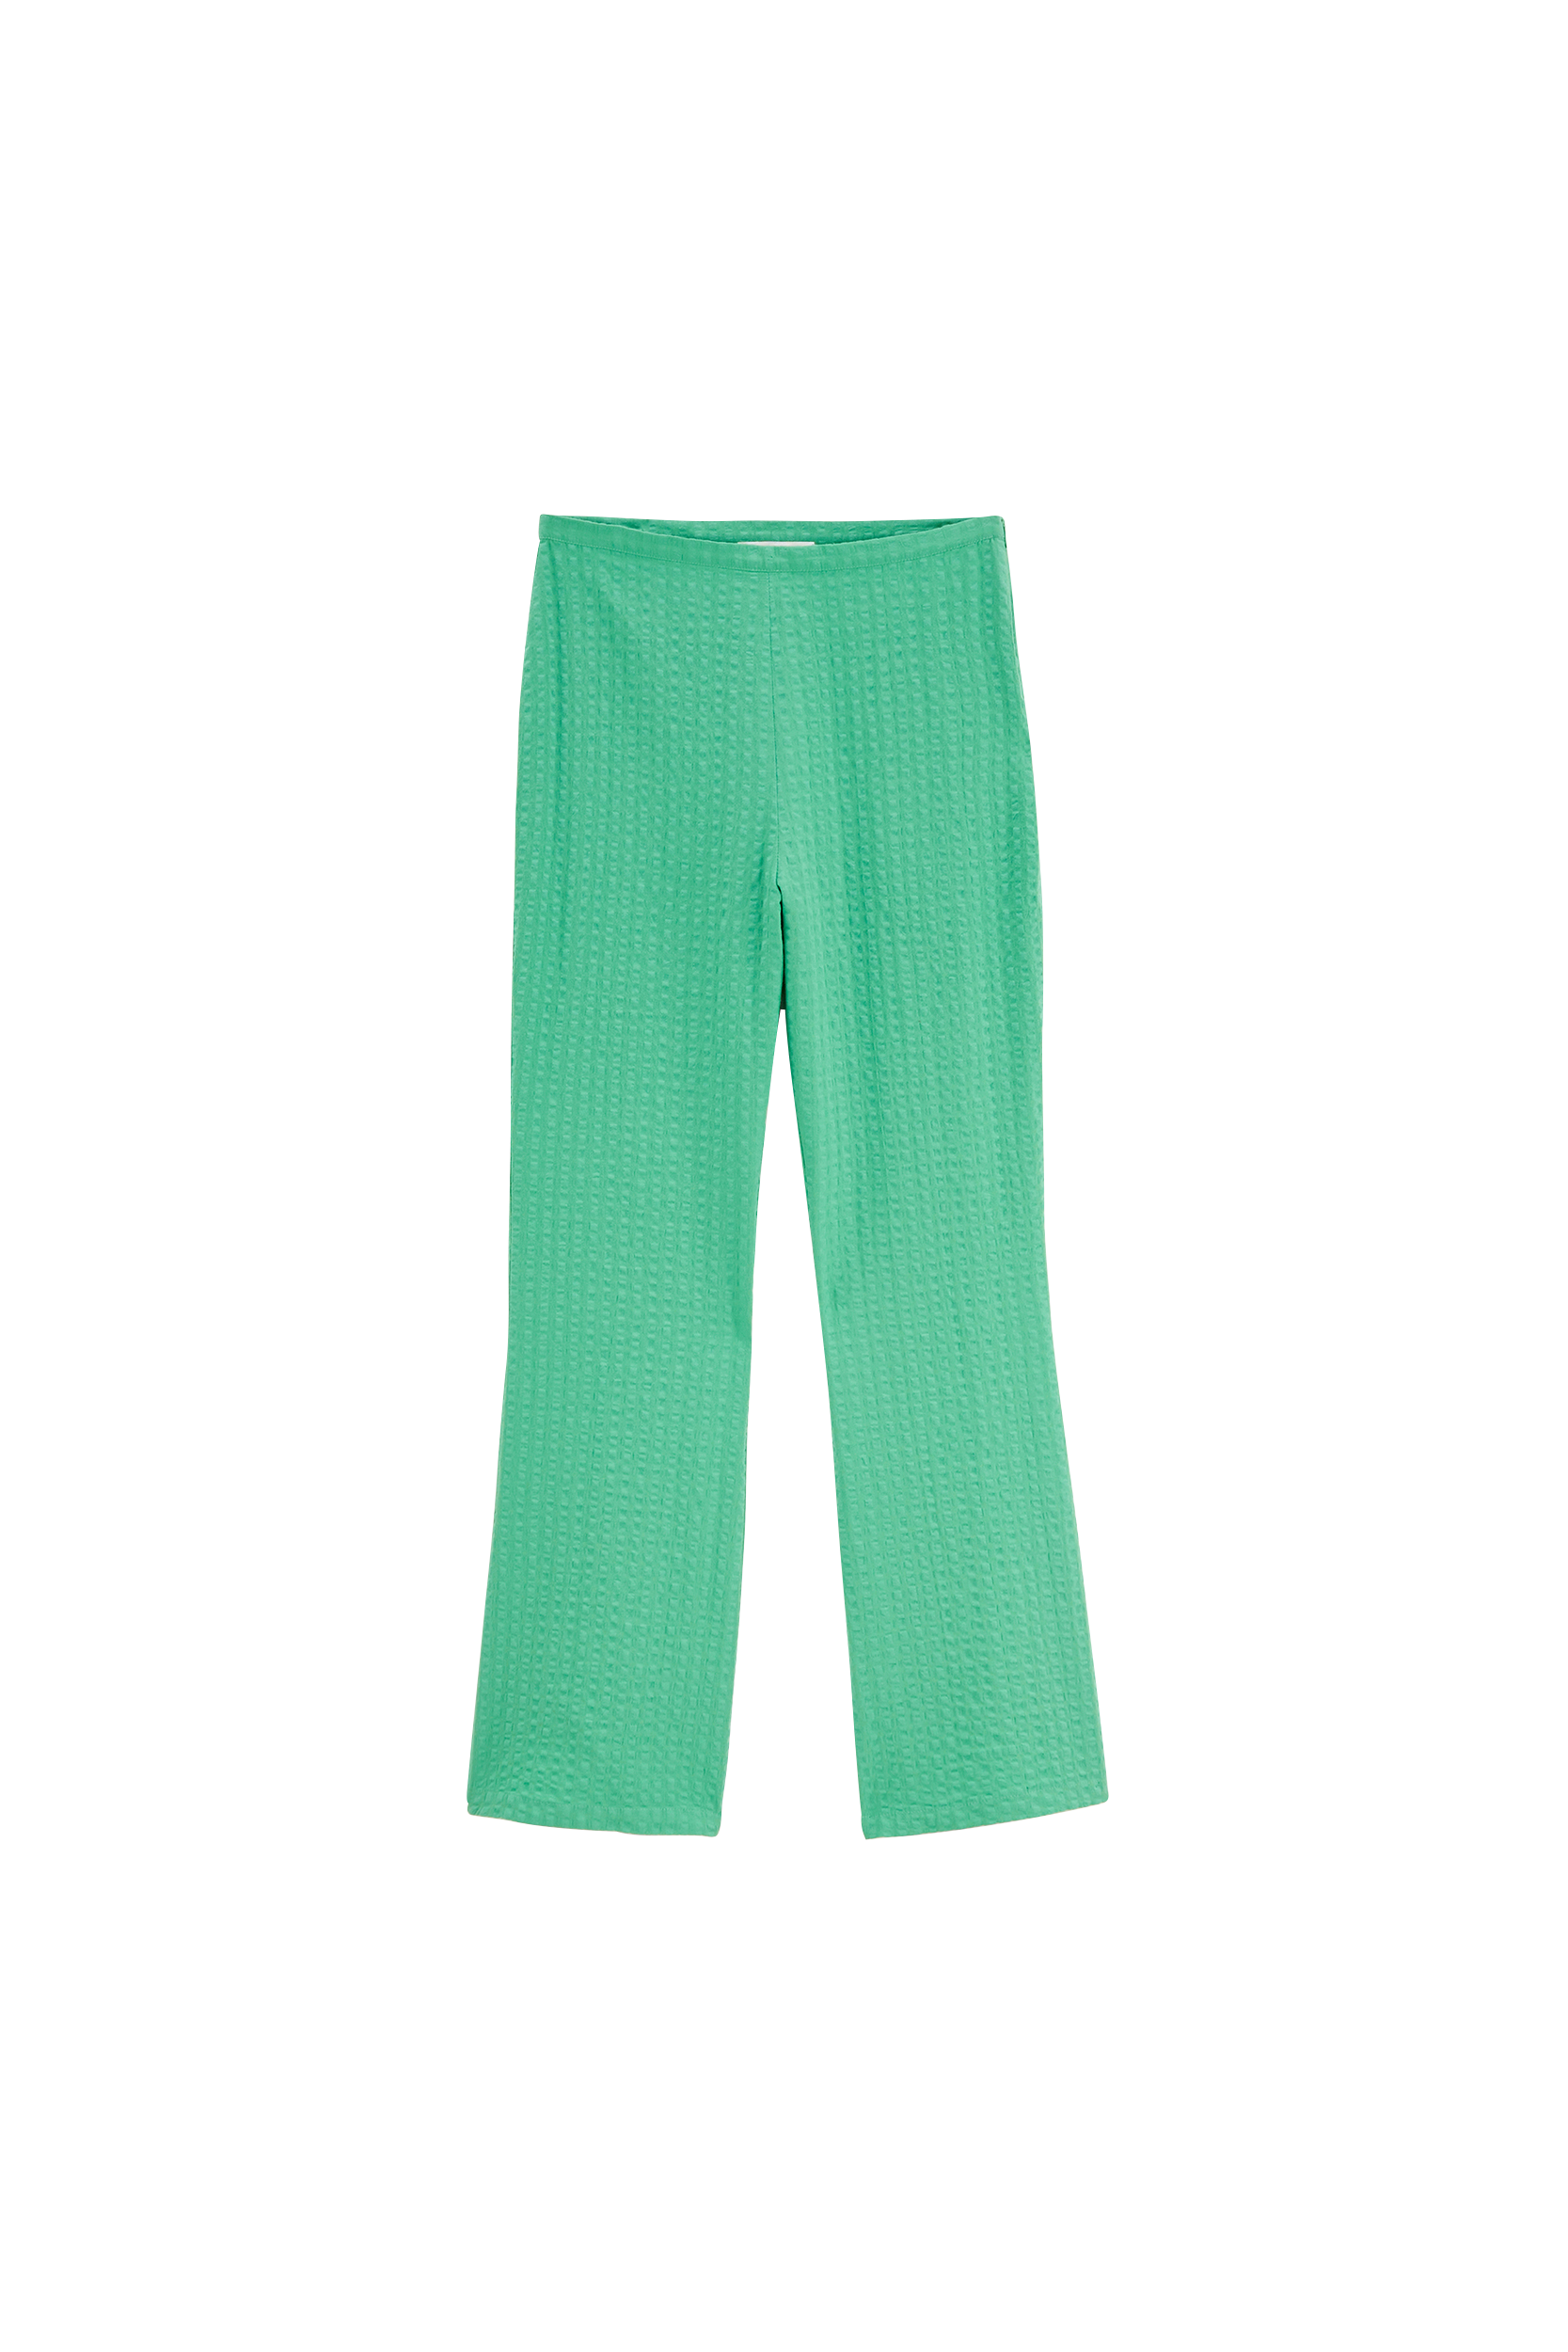 Lawn green Joel pants